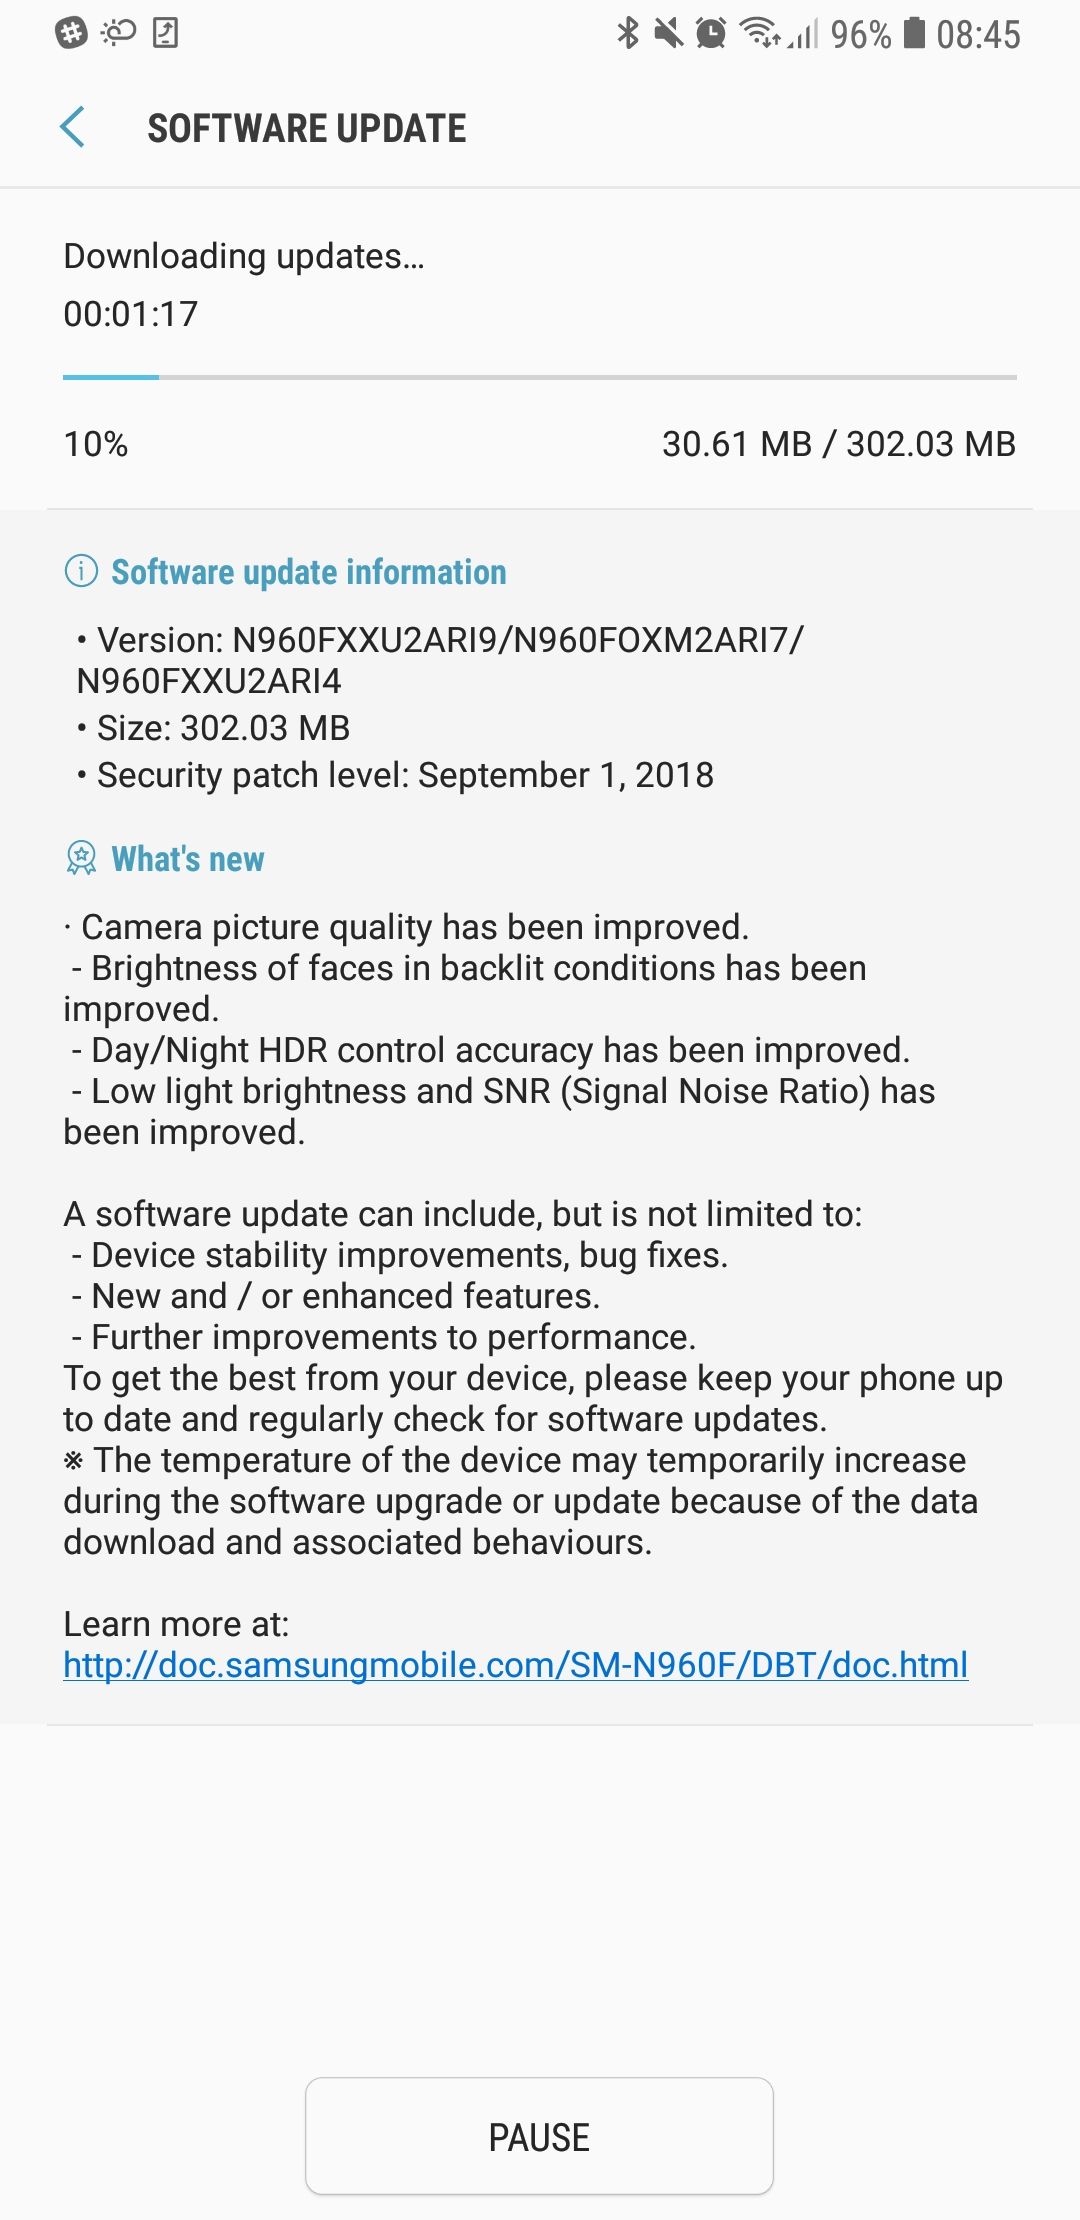 Galaxy Note 9 อัพเดทล่าสุด เพิ่มคุณภาพกล้อง ภาพถ่ายเซลฟี่ ภาพในที่แสงน้อย และภาพ HDR